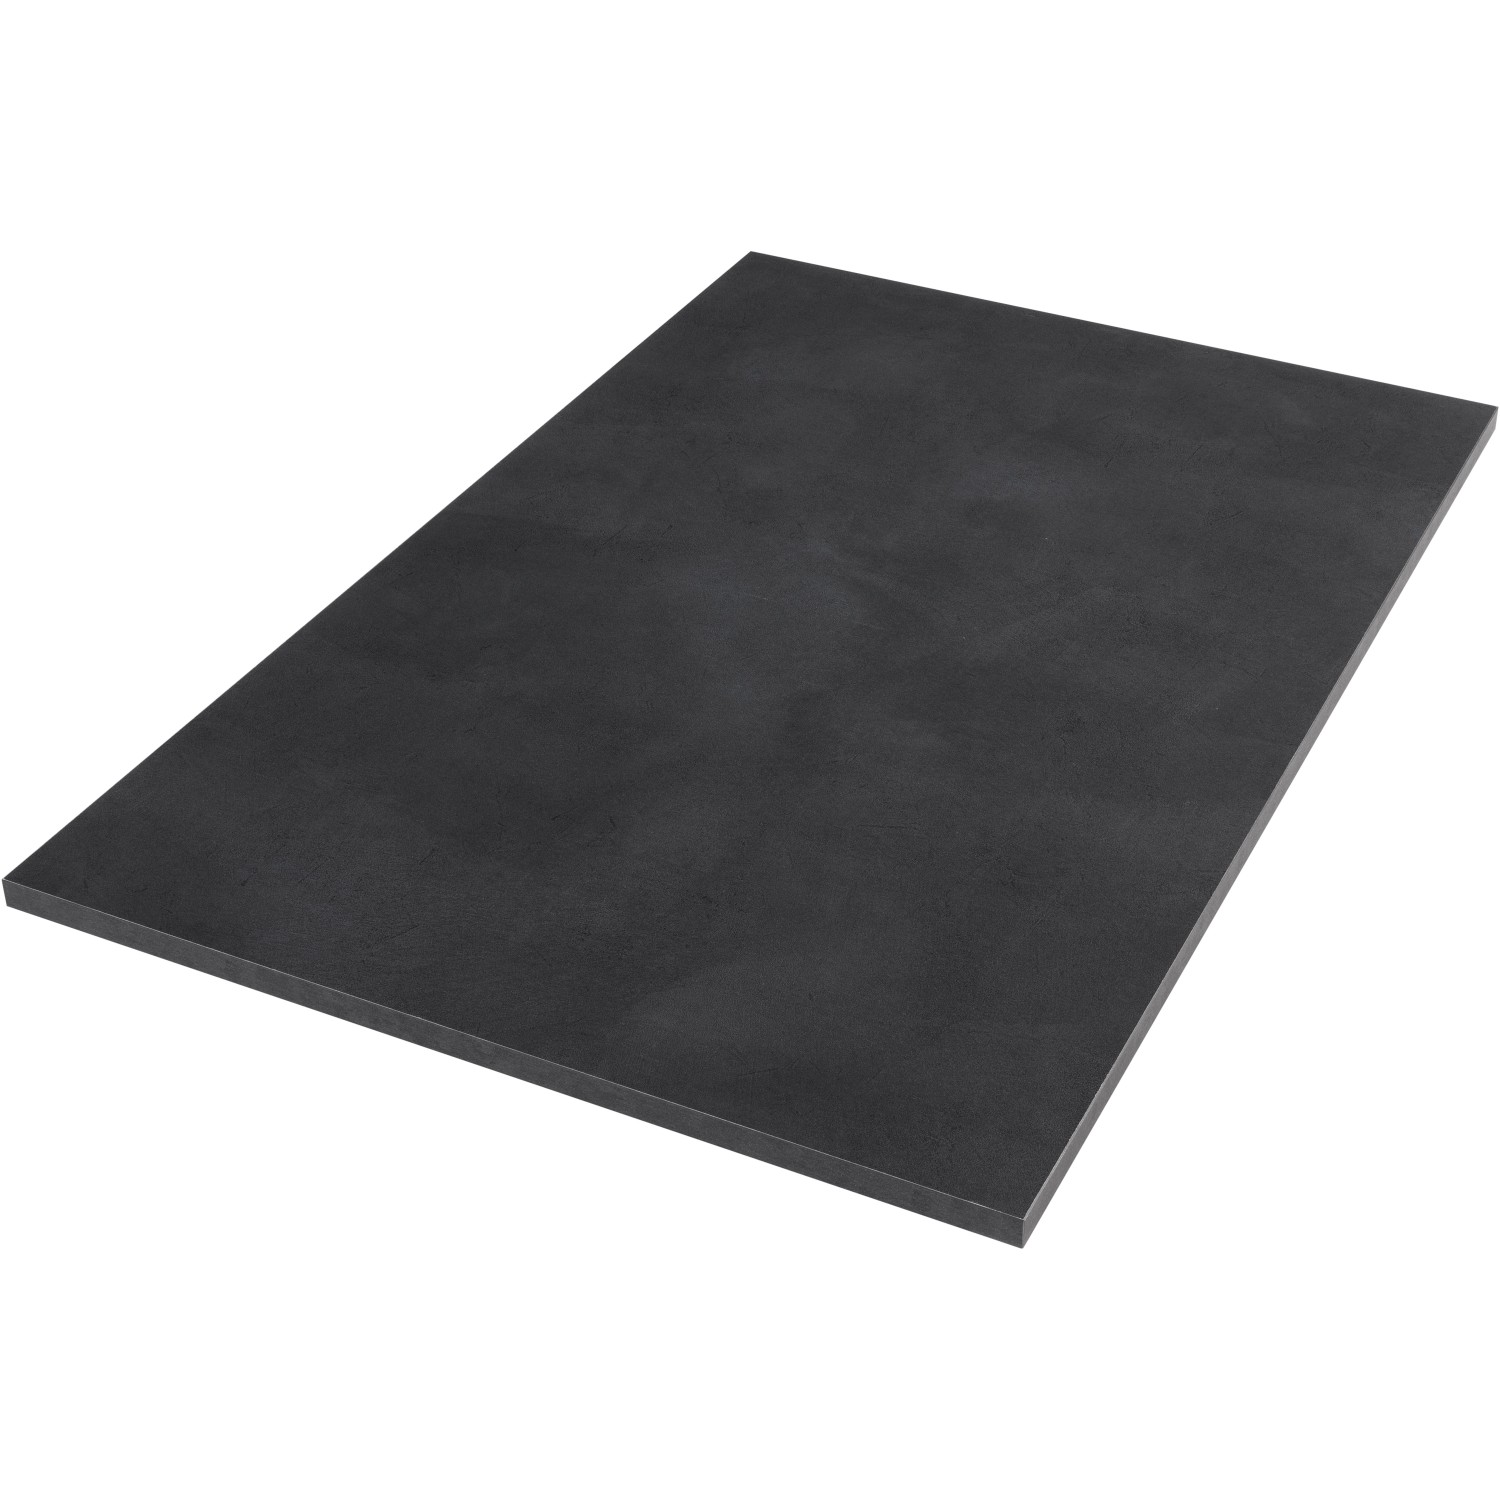 Tischplatte Midnight Stucco Betonoptik Dunkel 120 cm x 80 cm x 2,5 cm